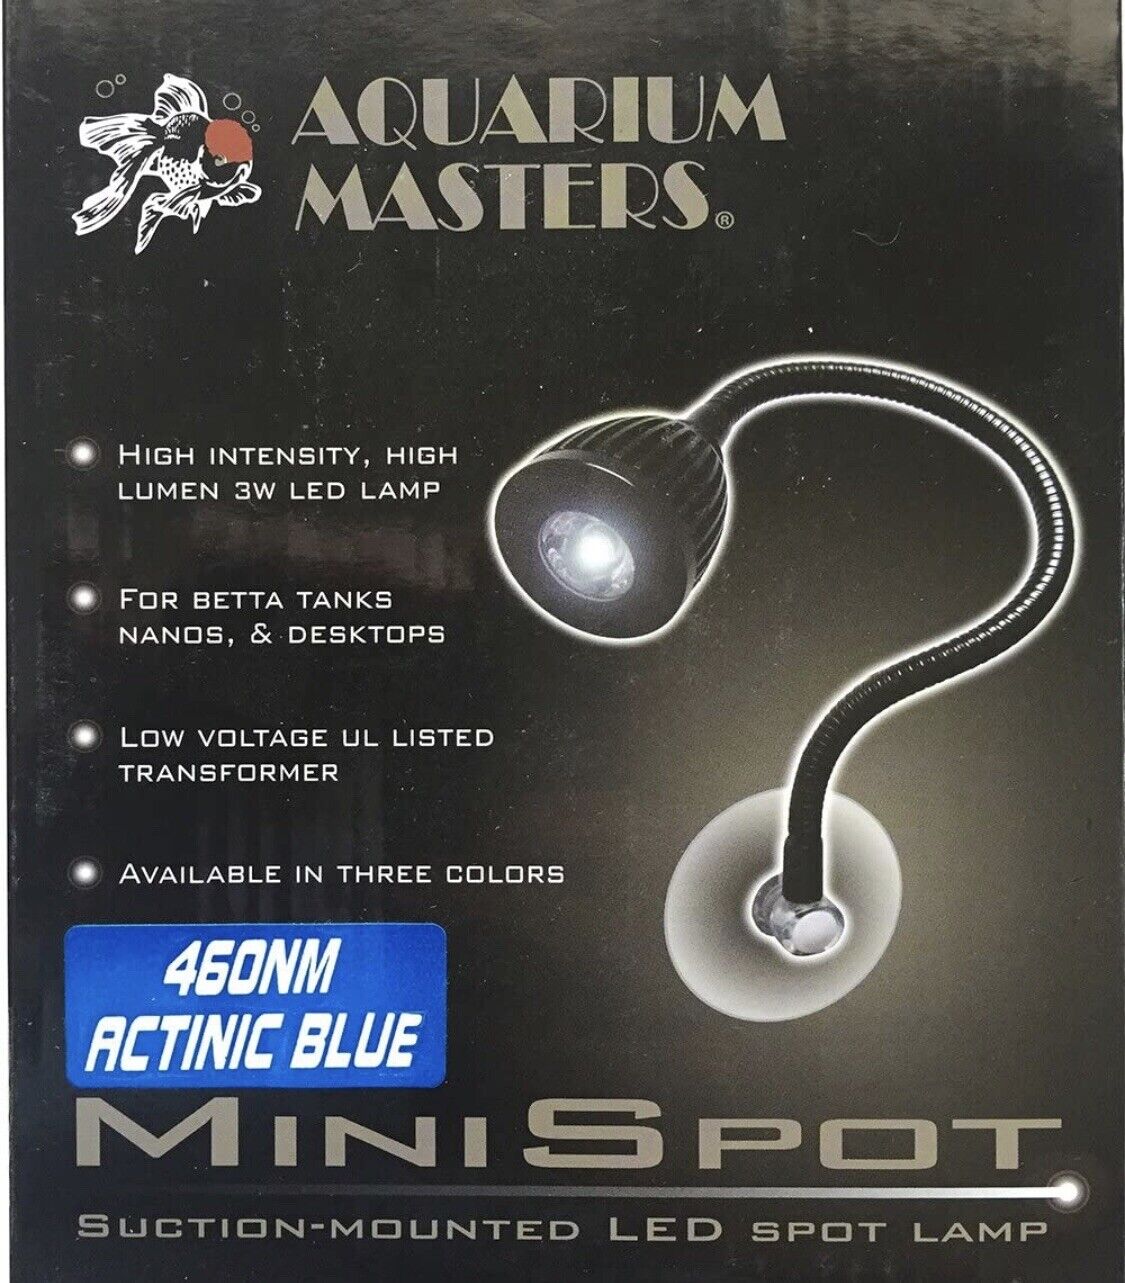 Aquarium Masters Actinic Blue Mini Spot Lamp